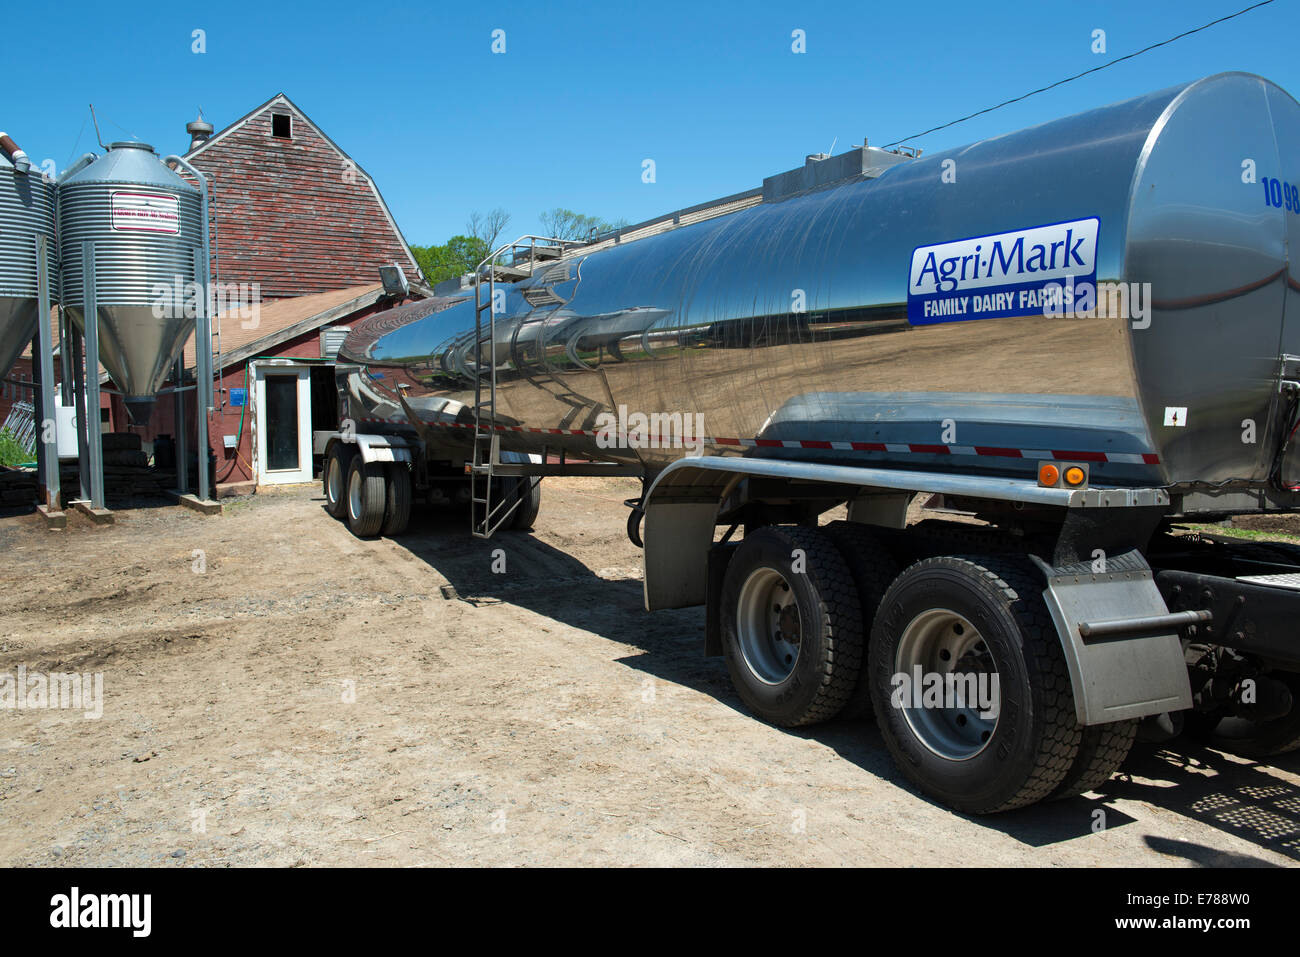 Camion-citerne ou réservoir de ferme laitière visites la collecte de lait pour Agri-Mark coopérative. Woodbury, CT. Banque D'Images